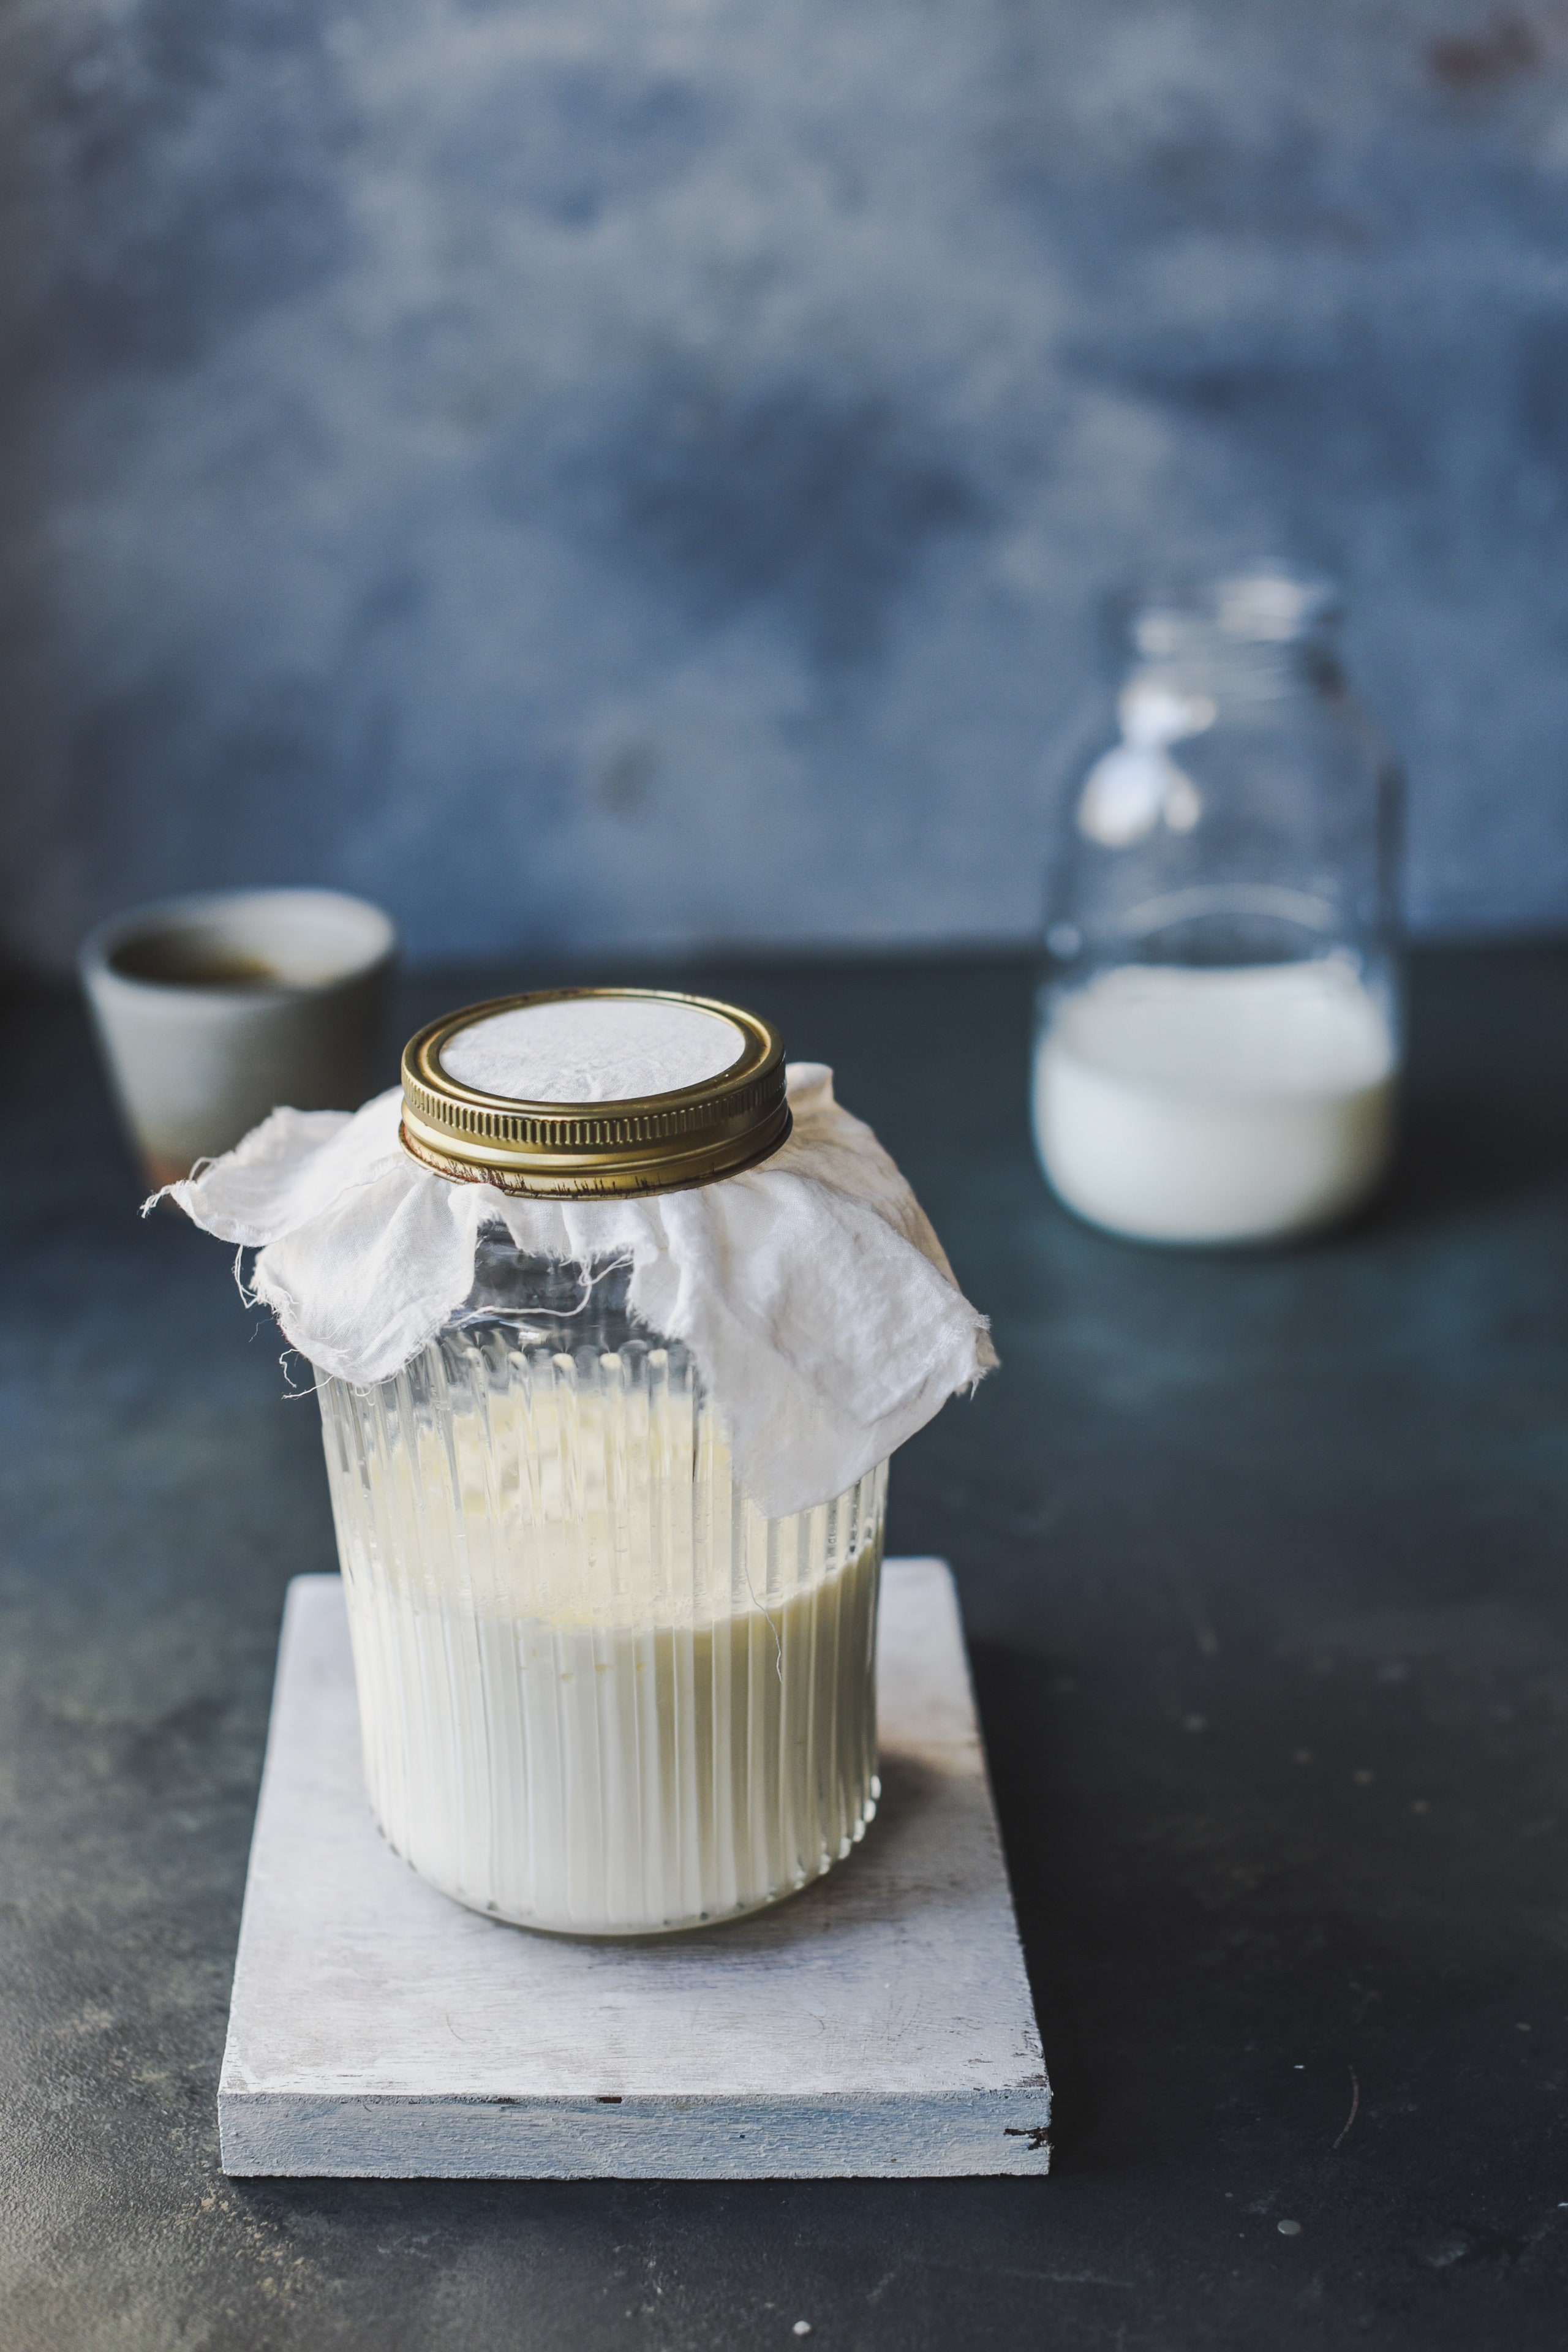 Молочная сыворотка - рецепты с фото. Что приготовить из молочной сыворотки?